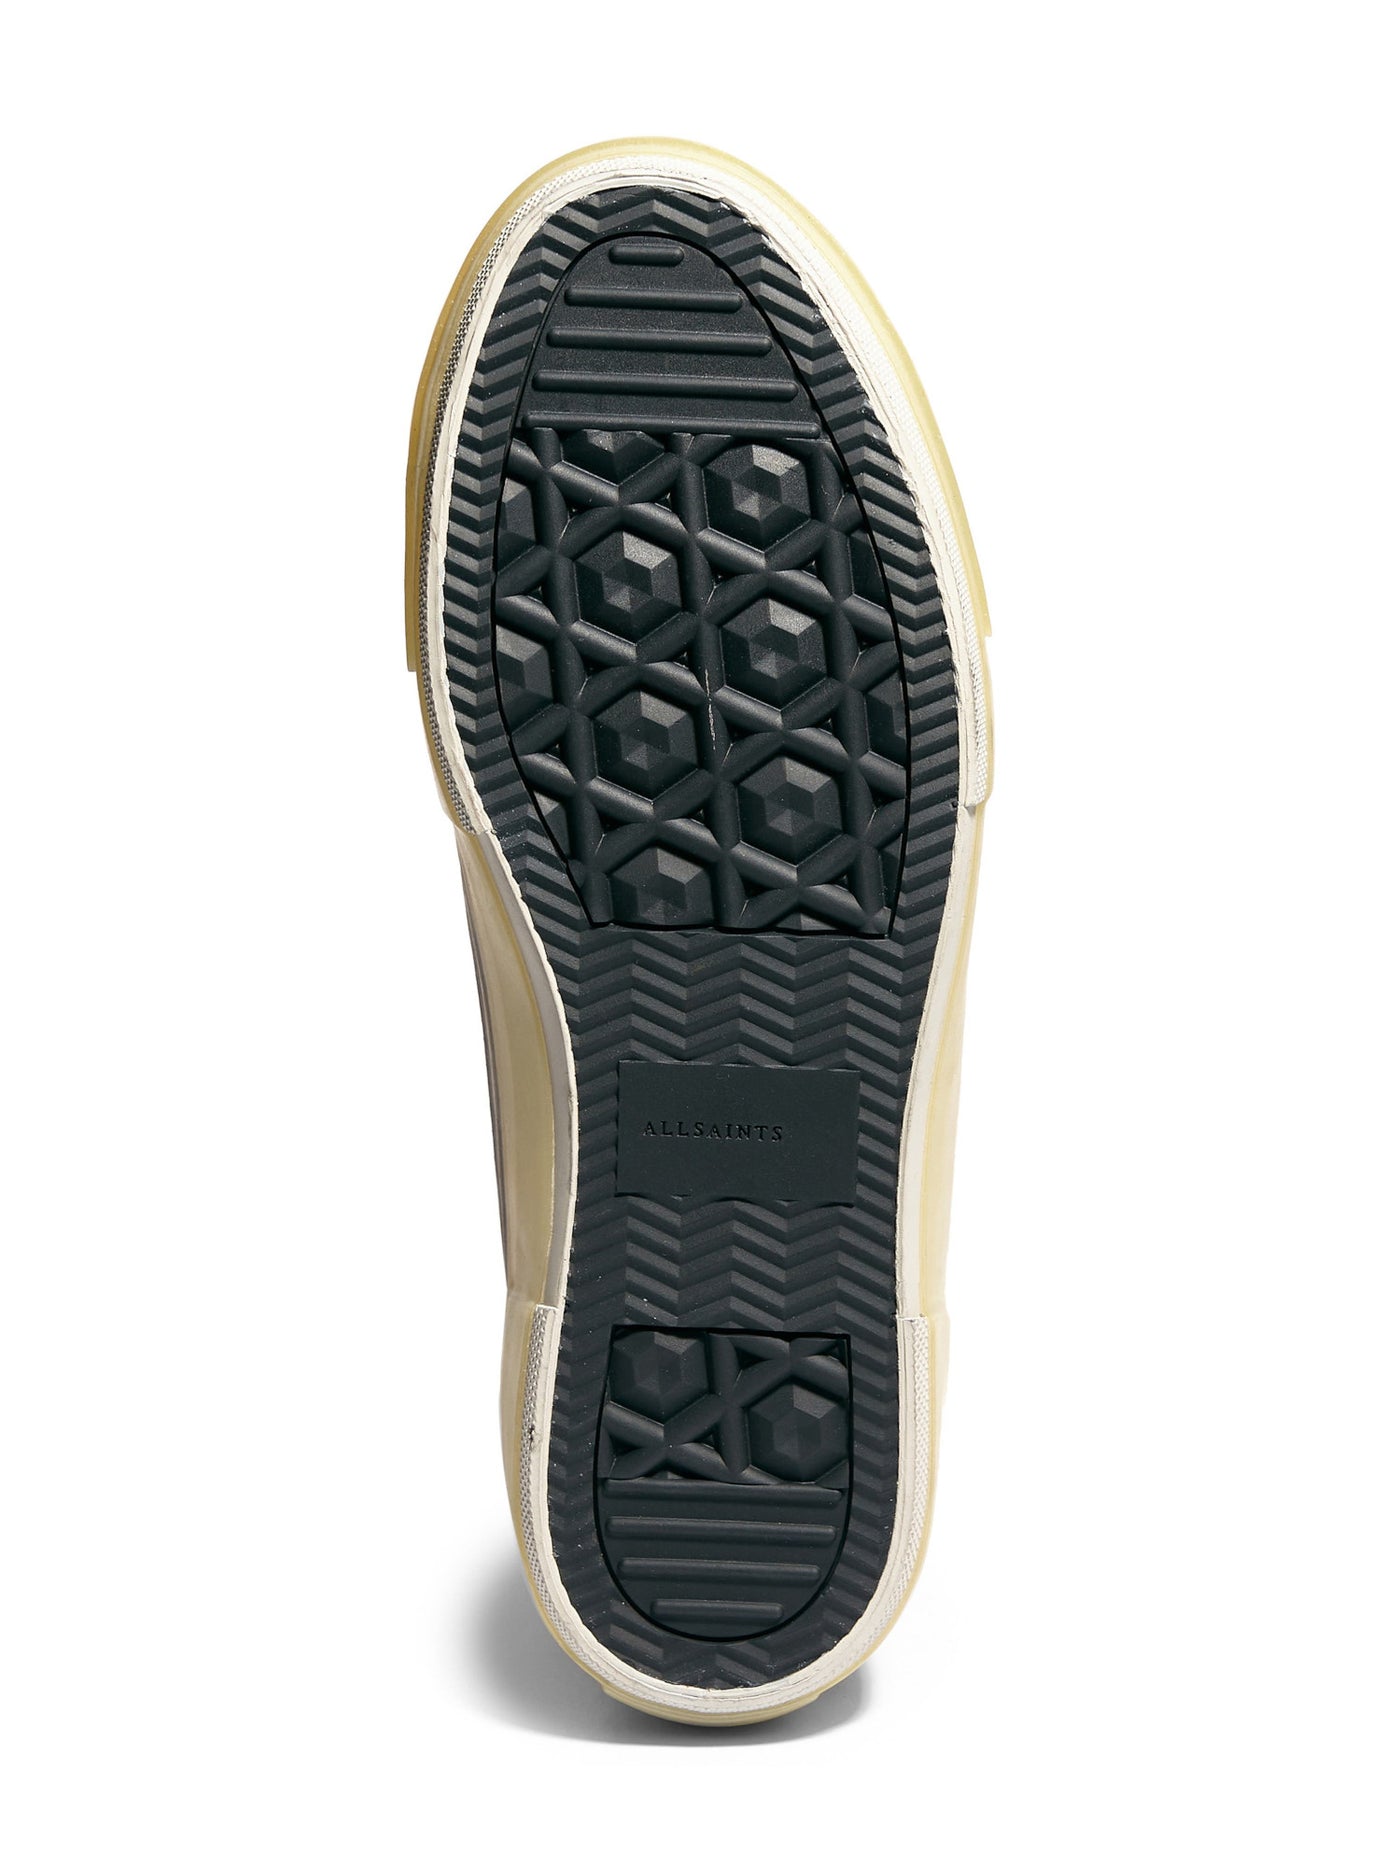 ALLSAINTS Mens Black Comfort Jaxon Round Toe Platform Lace-Up Athletic Sneakers Shoes